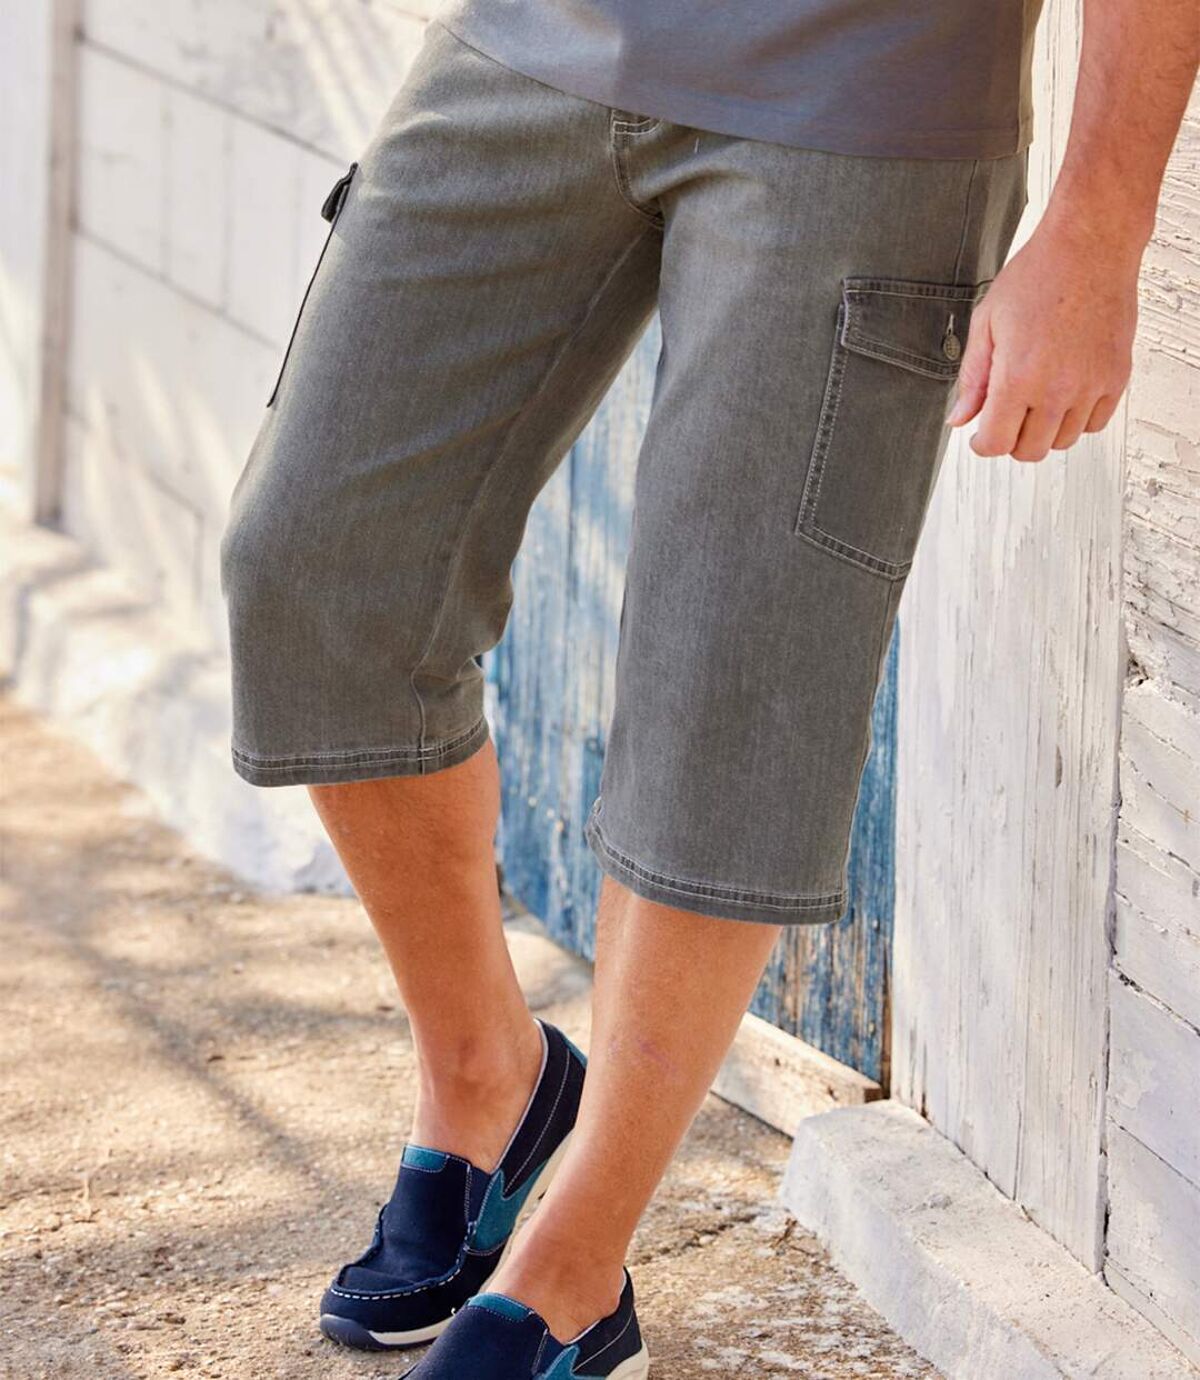 Wygodne, jeansowe spodnie ¾ ze stretchem Atlas For Men